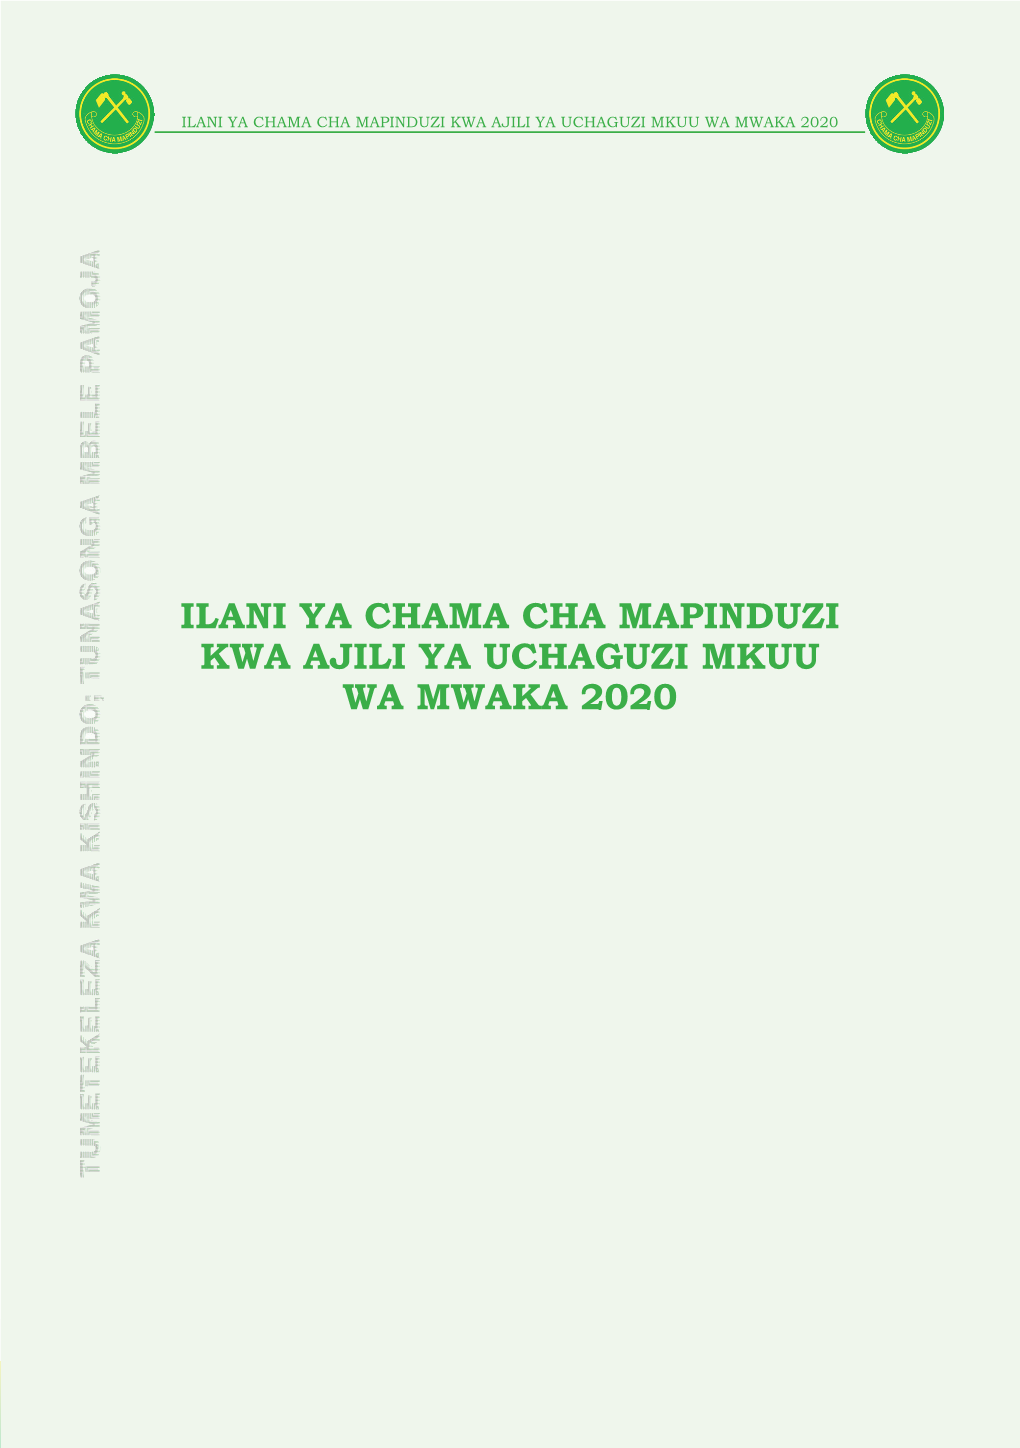 Ilani Ya Chama Cha Mapinduzi Kwa Ajili Ya Uchaguzi Mkuu Wa Mwaka 2020